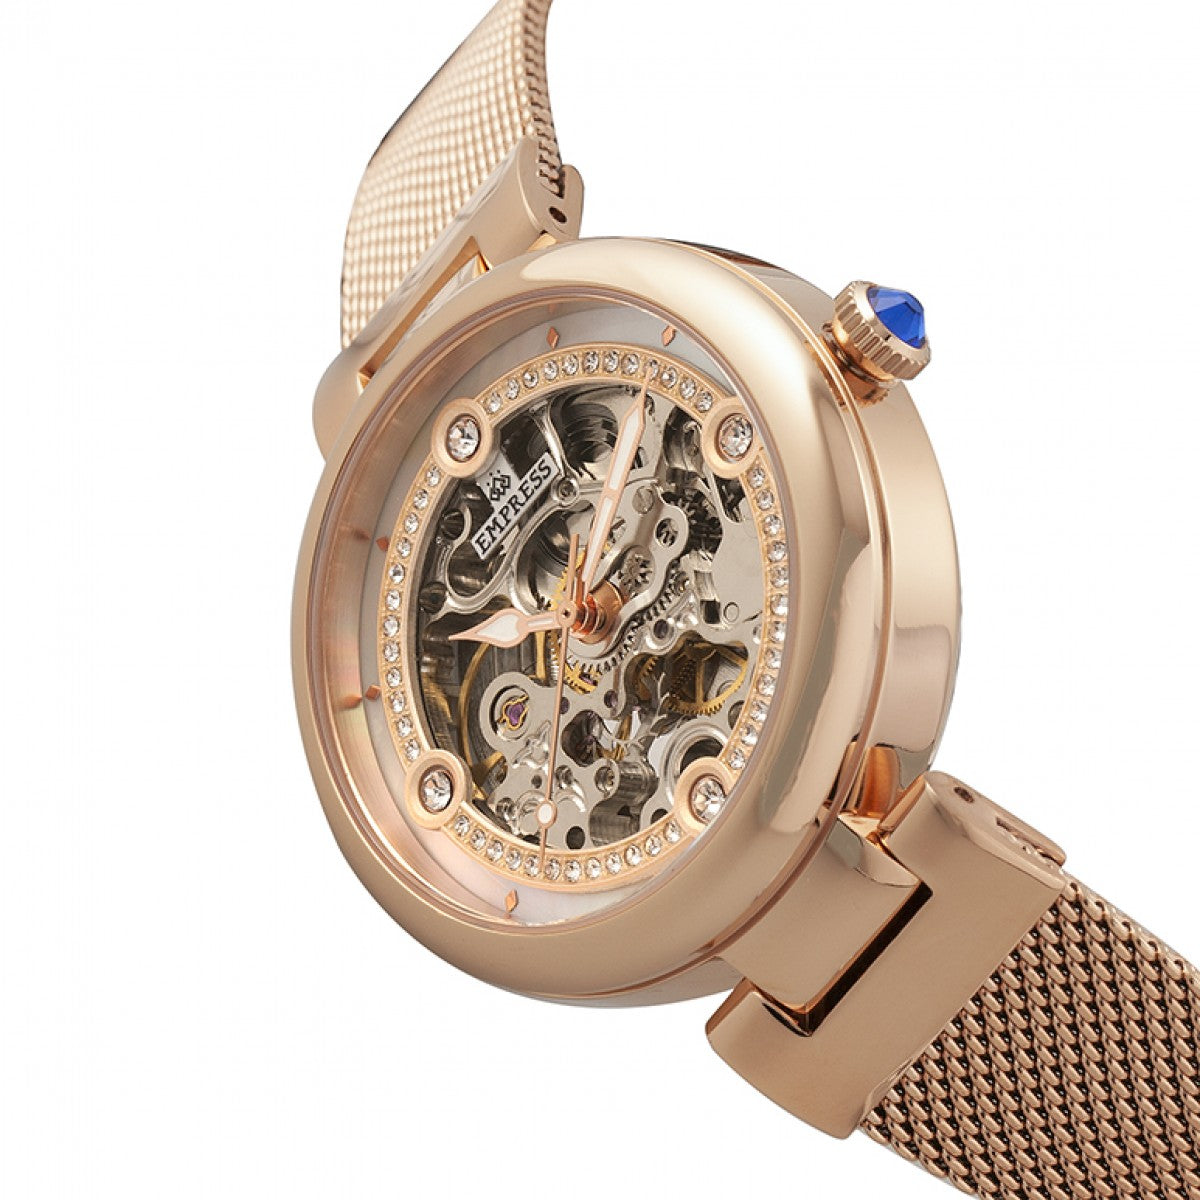 Empress Adelaide Automatic Skeleton Mesh-Bracelet Watch - Rose Gold - EMPEM2503